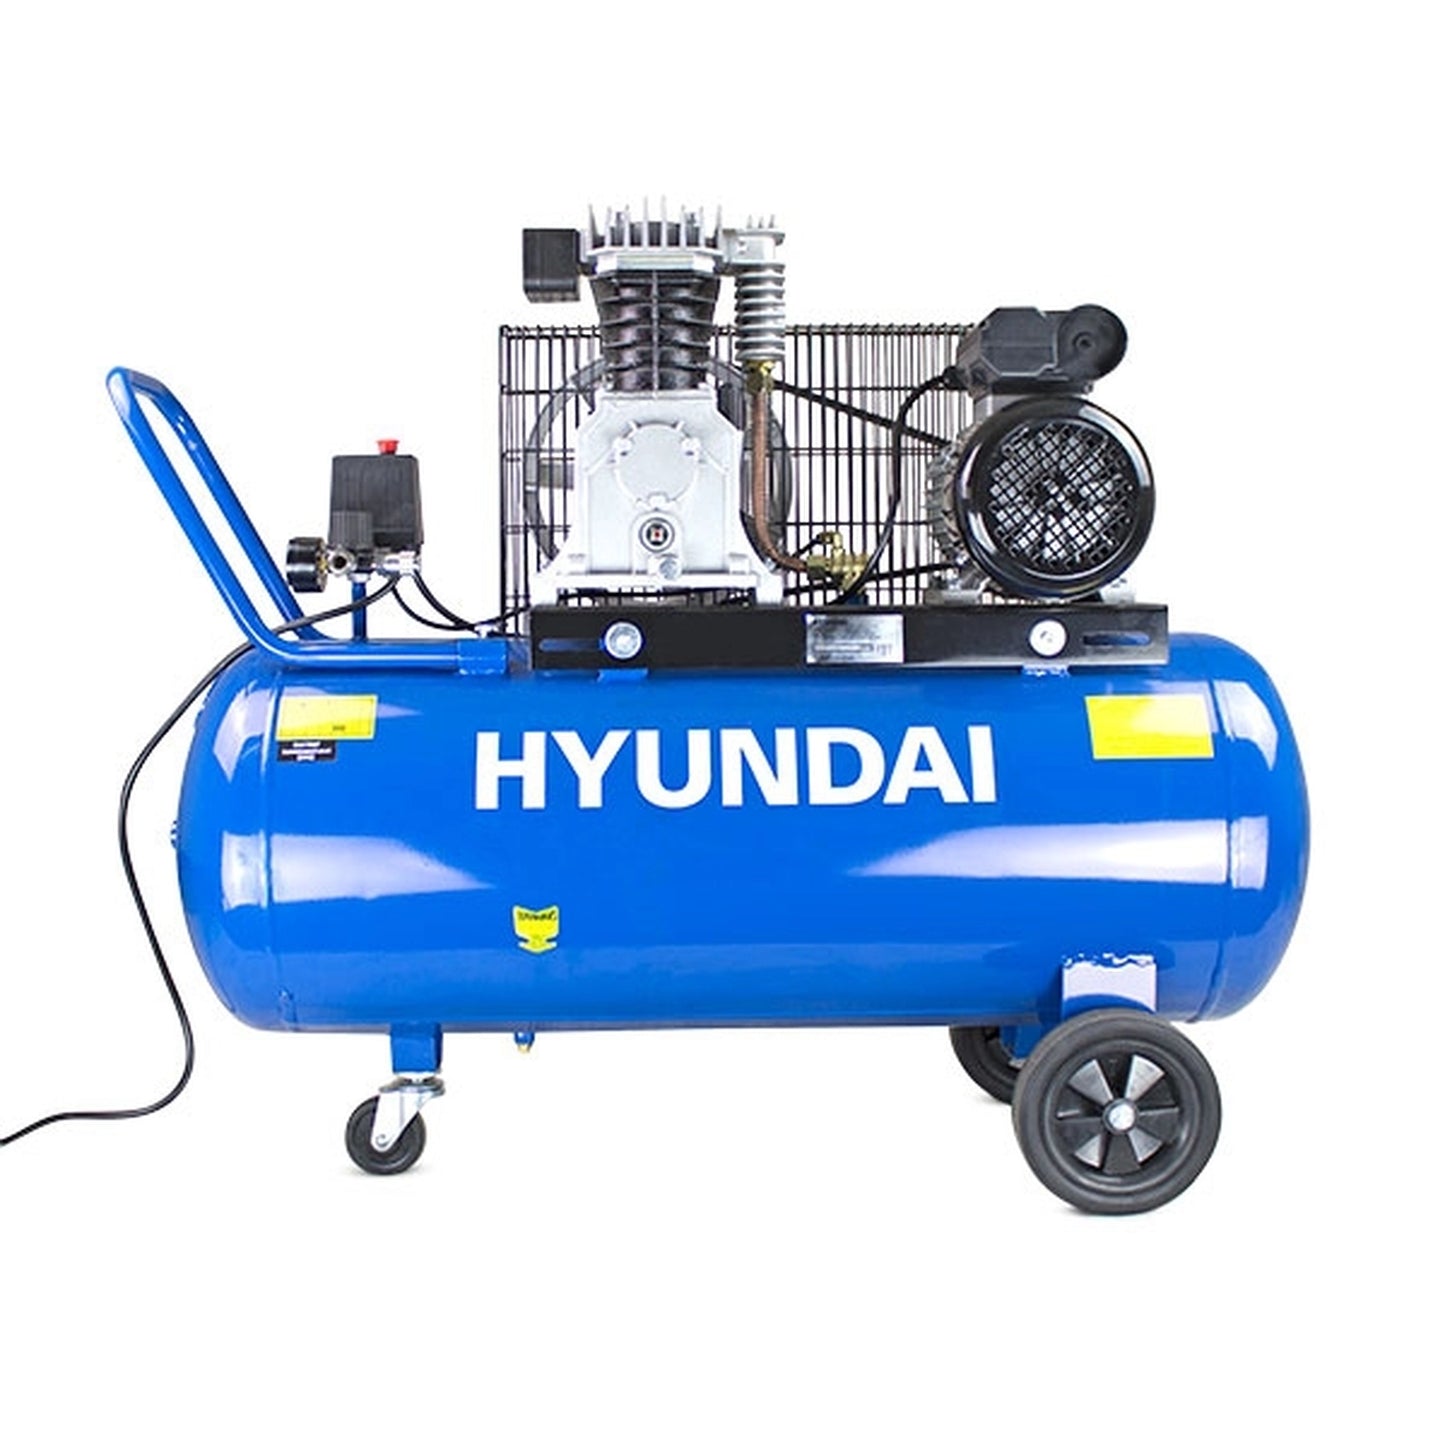 Hyundai HY3100P Electric Air Compressor 100L